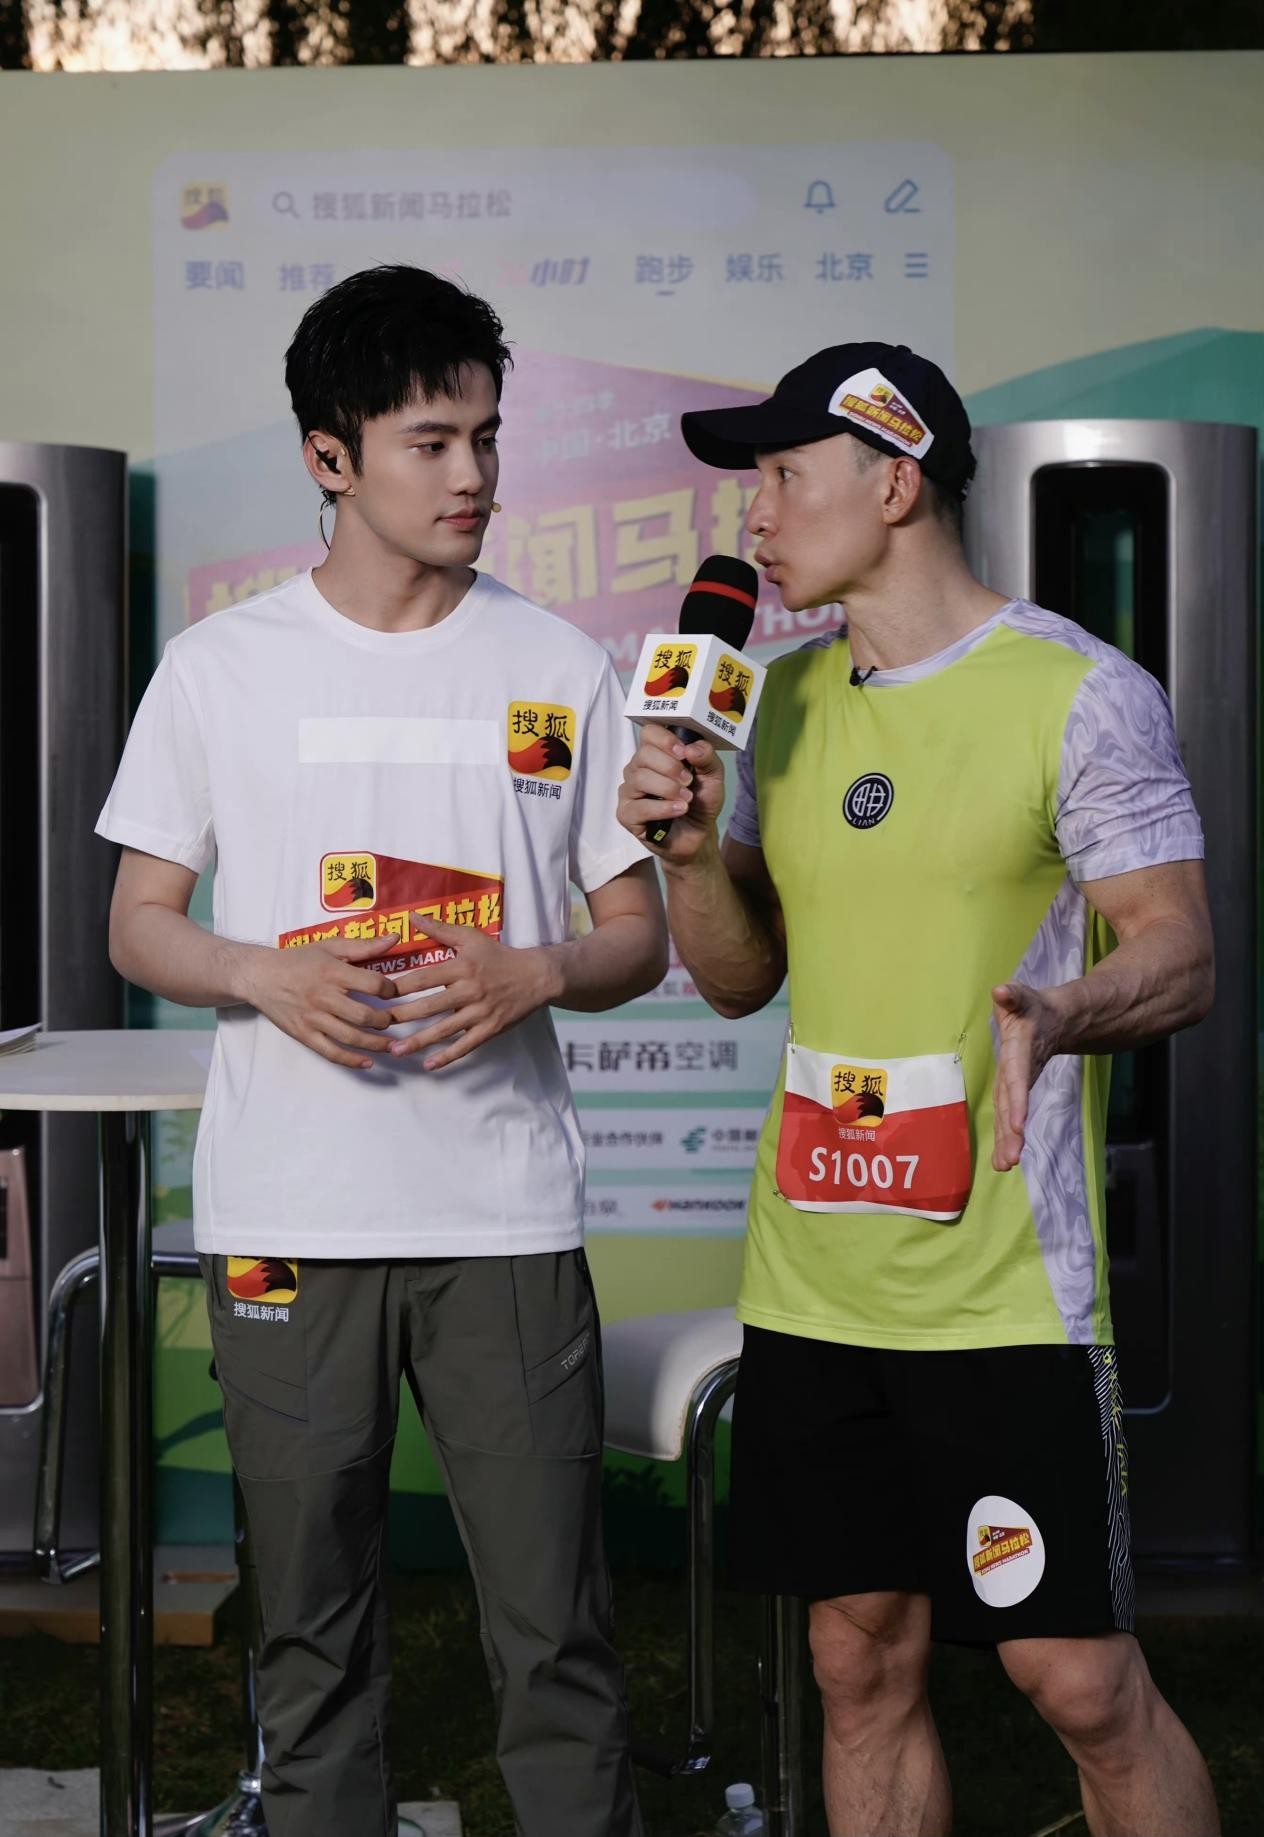 刘畊宏表示原本他潮牌只想挑战10公里的距离（卫然主持明星马拉松赛事被刘畊宏现场教“体态”）